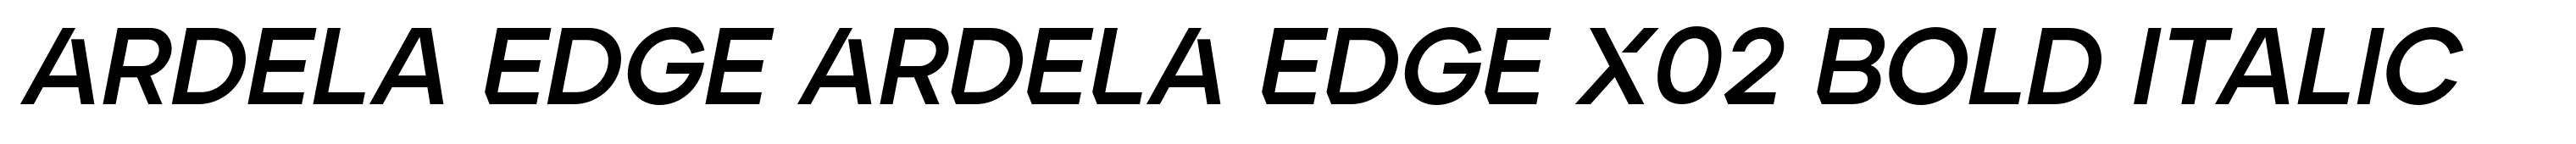 Ardela Edge ARDELA EDGE X02 Bold Italic